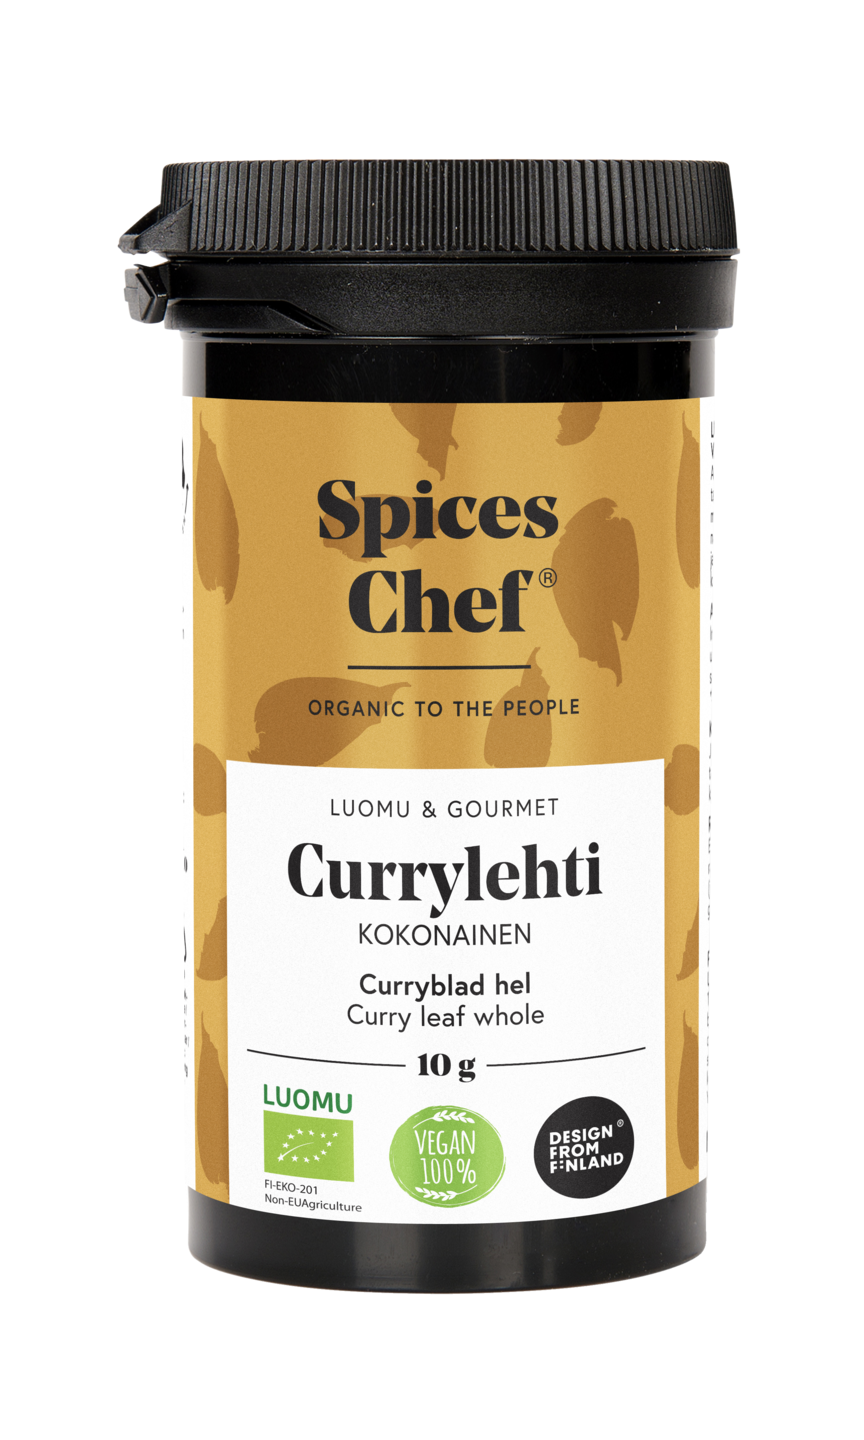 Spices Chef luomu currylehti kokonainen 10g, BPA-vapaassa biomuovi maustepurkkissa.